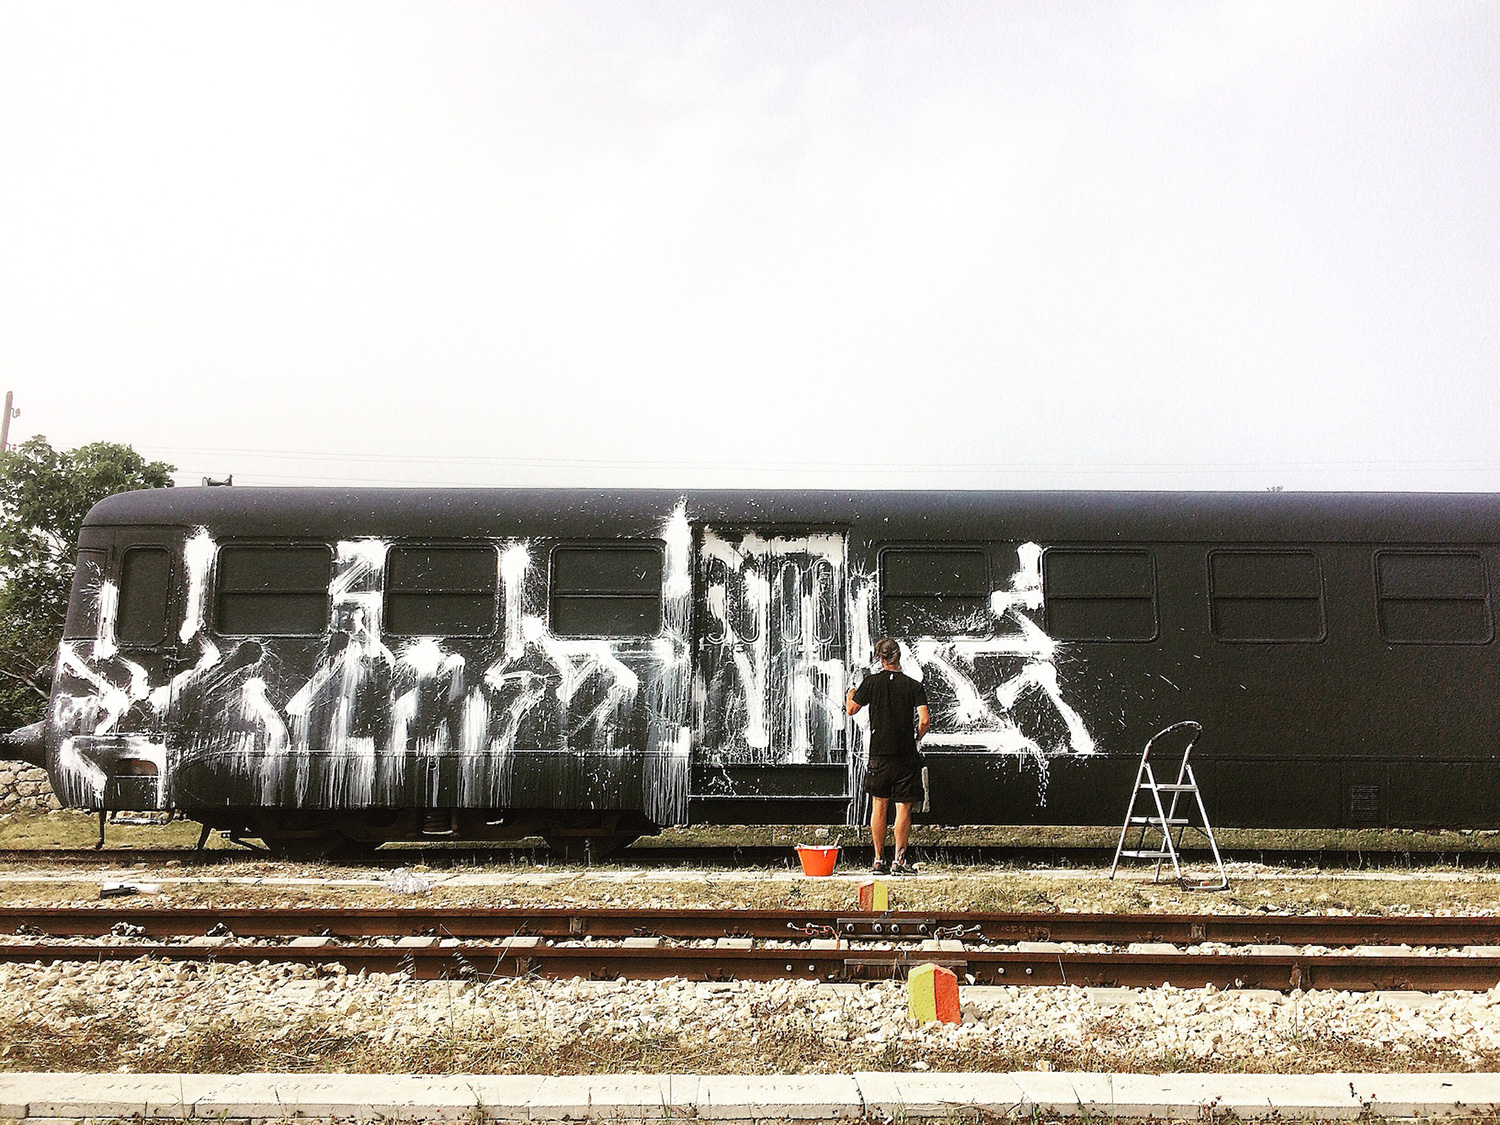 Lek-&-Sowat--Villa-Medici-Capo-d'Arte-Train-graffiti-Italia-Gagliano-del-Capo-9